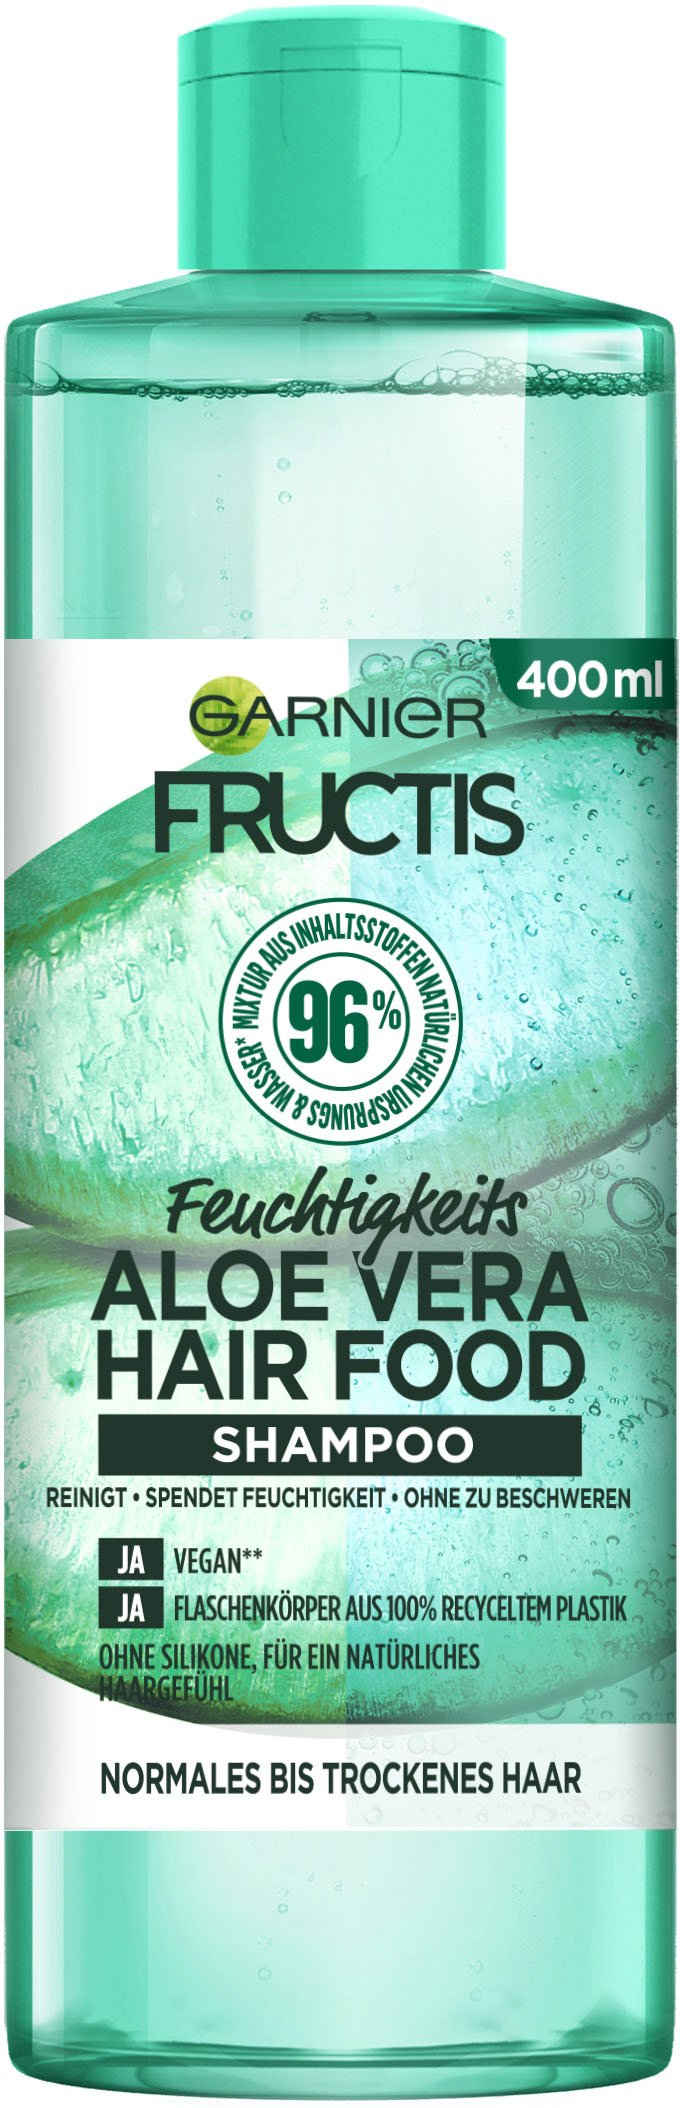 GARNIER Haarshampoo Fructis Aloe Vera Hair Food Shampoo